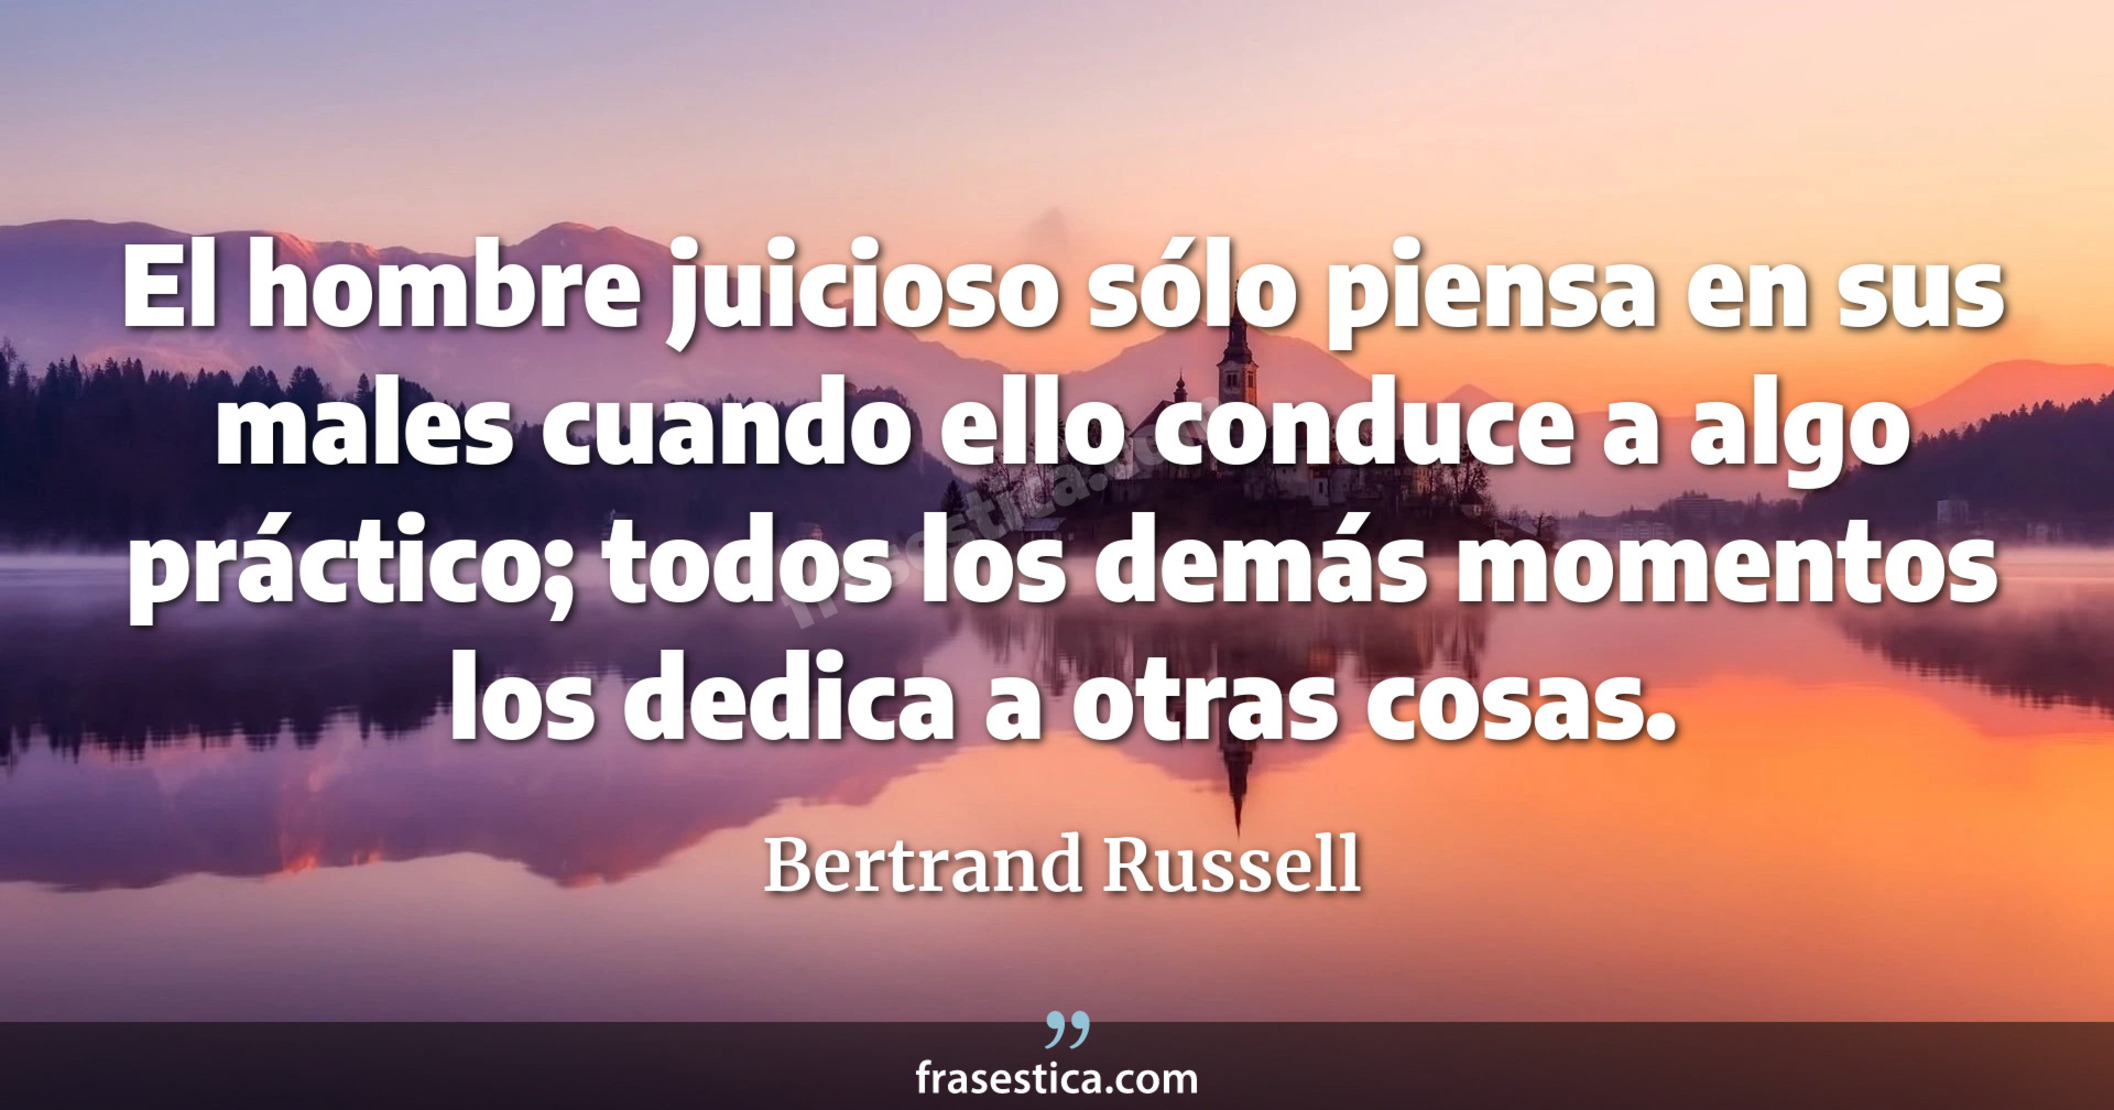 El hombre juicioso sólo piensa en sus males cuando ello conduce a algo práctico; todos los demás momentos los dedica a otras cosas. - Bertrand Russell